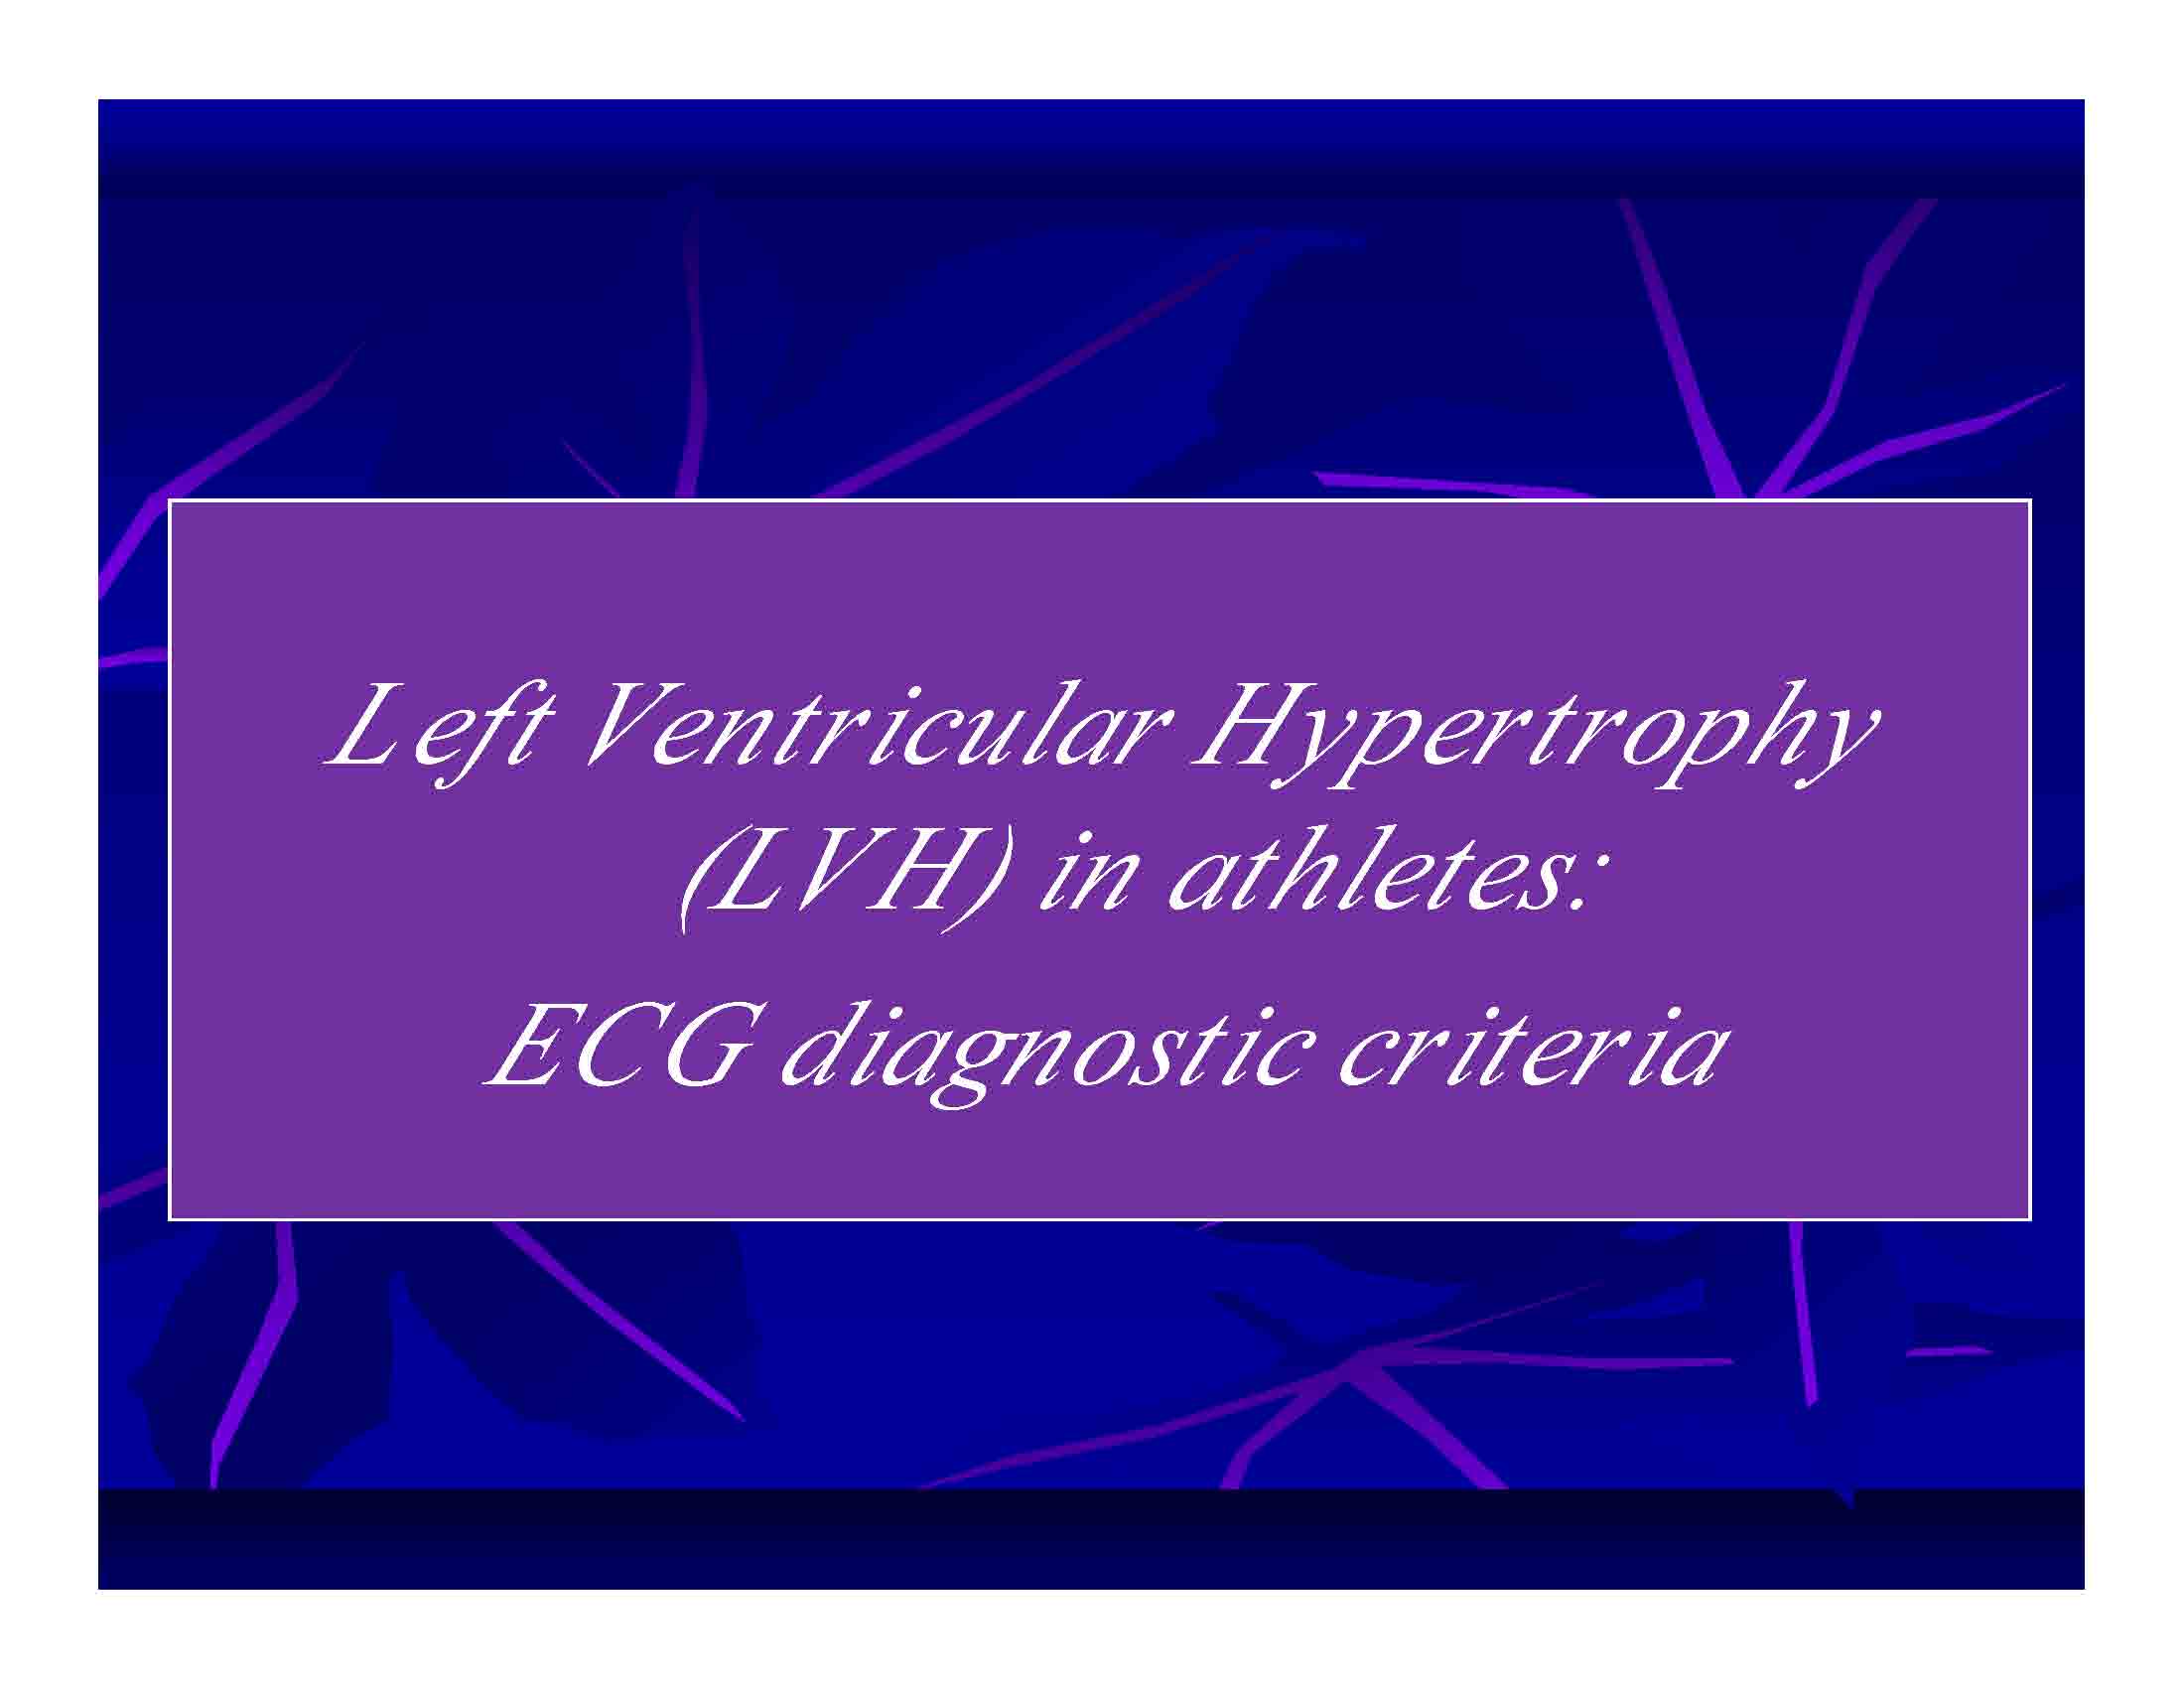 Left Ventricular Hypertrophy (LVH) in athletes